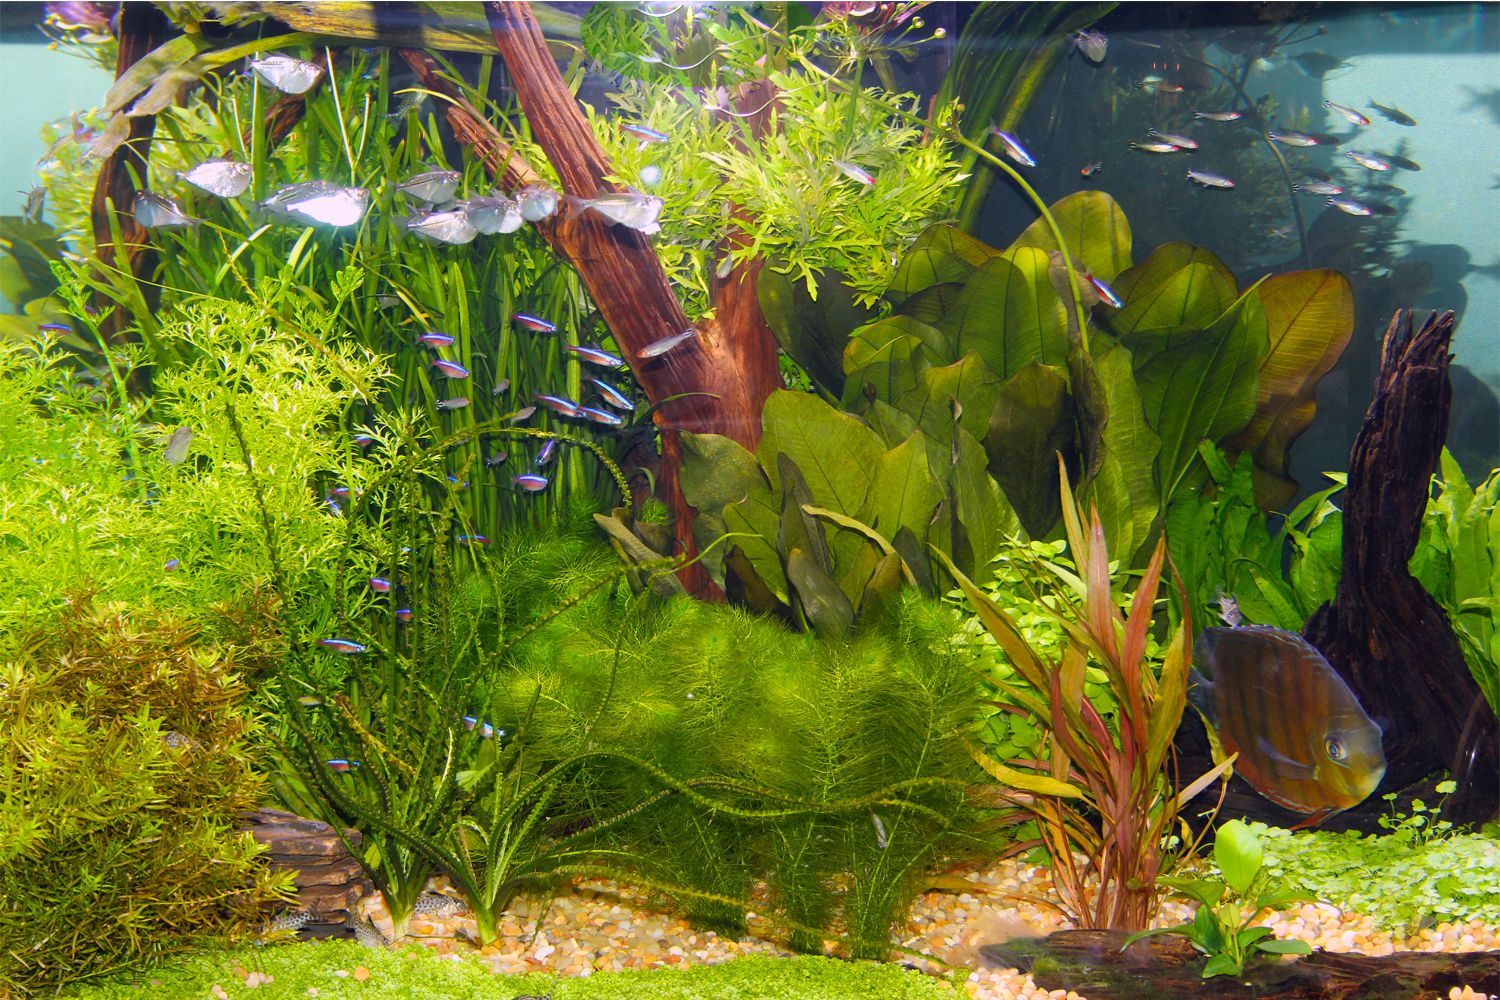 High light aquarium plants Idea